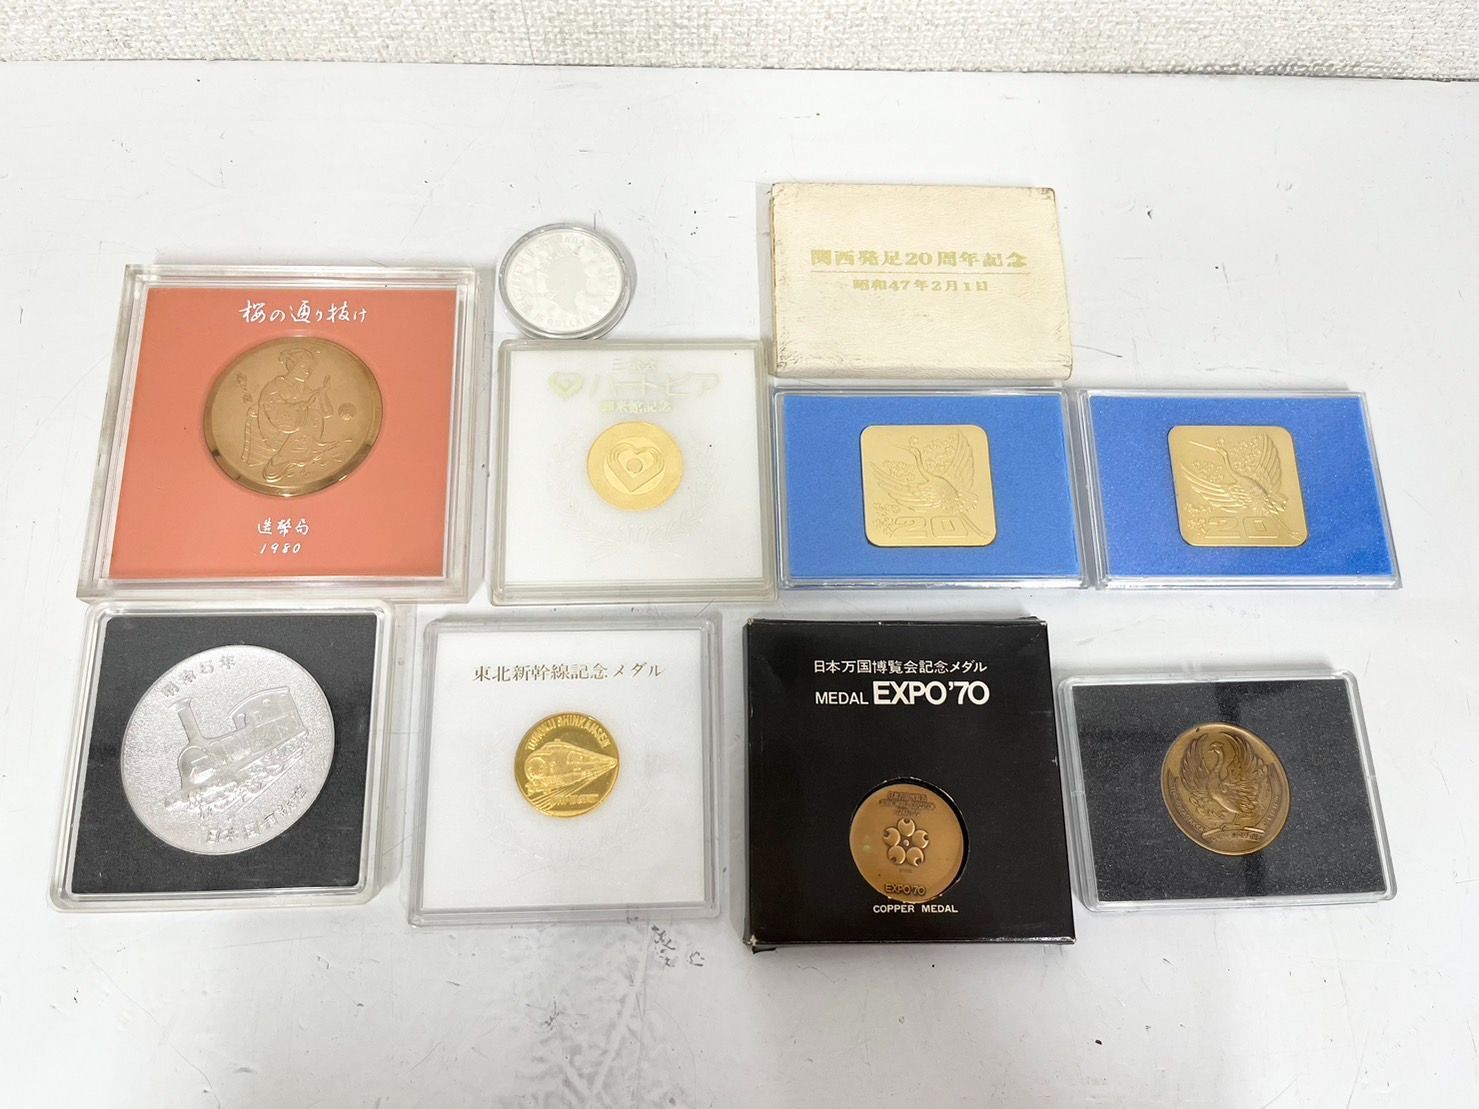 桜の通り抜け記念メダル 日本国有鉄道メダルなどまとめ - 旧貨幣